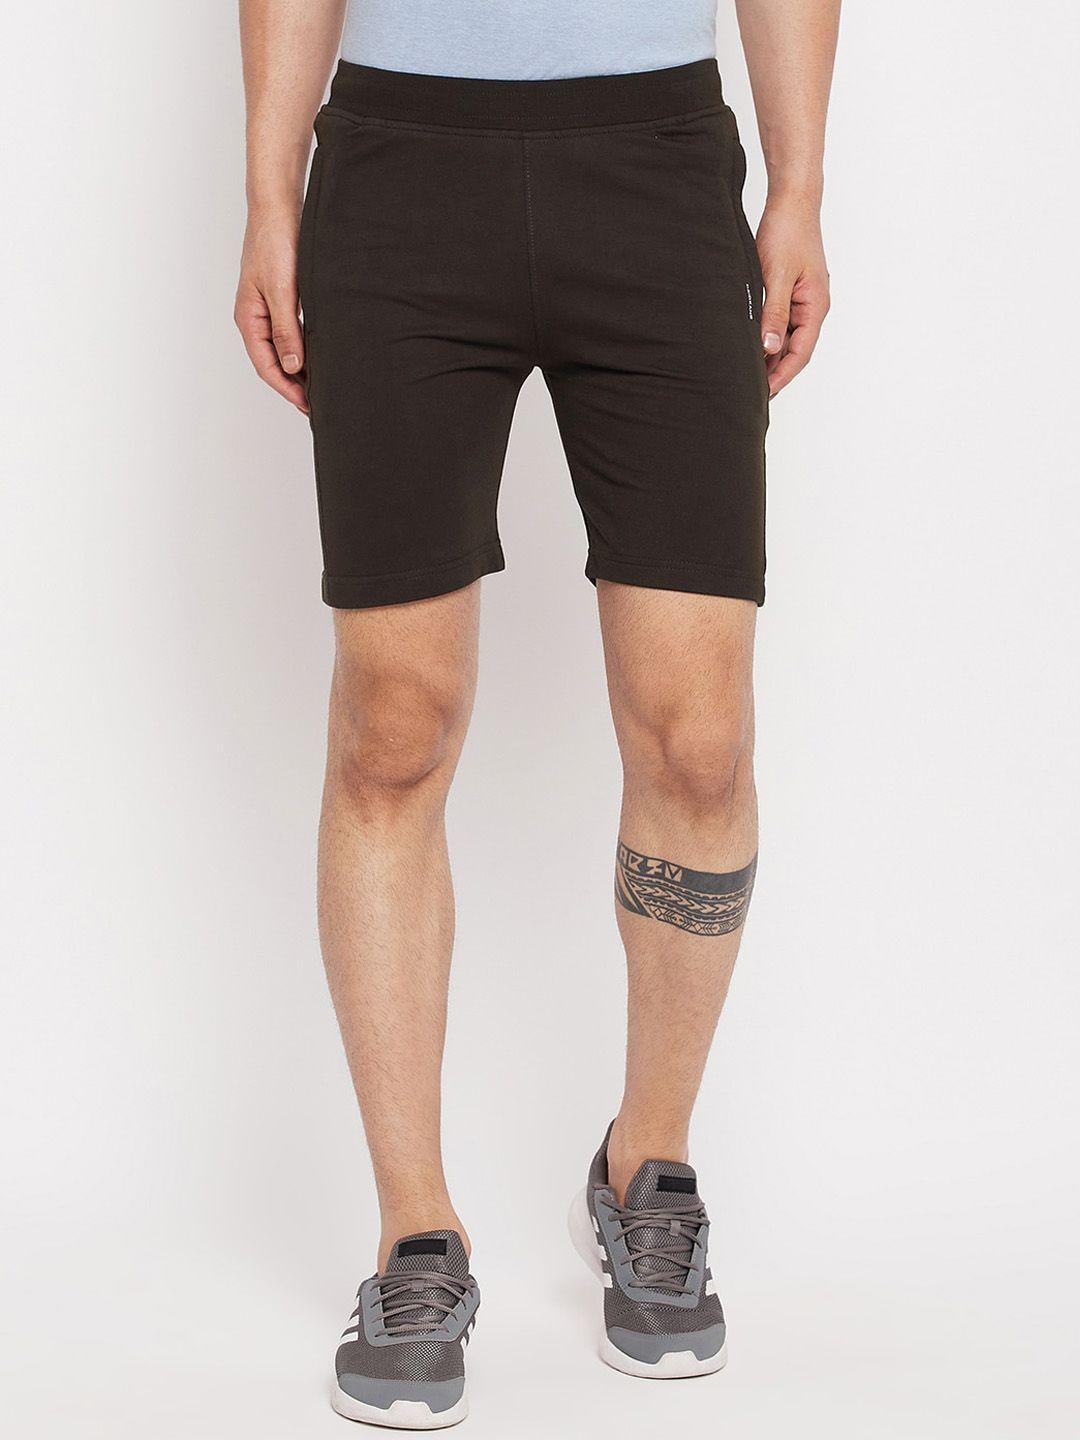 okane-men-mid-rise-sports-shorts